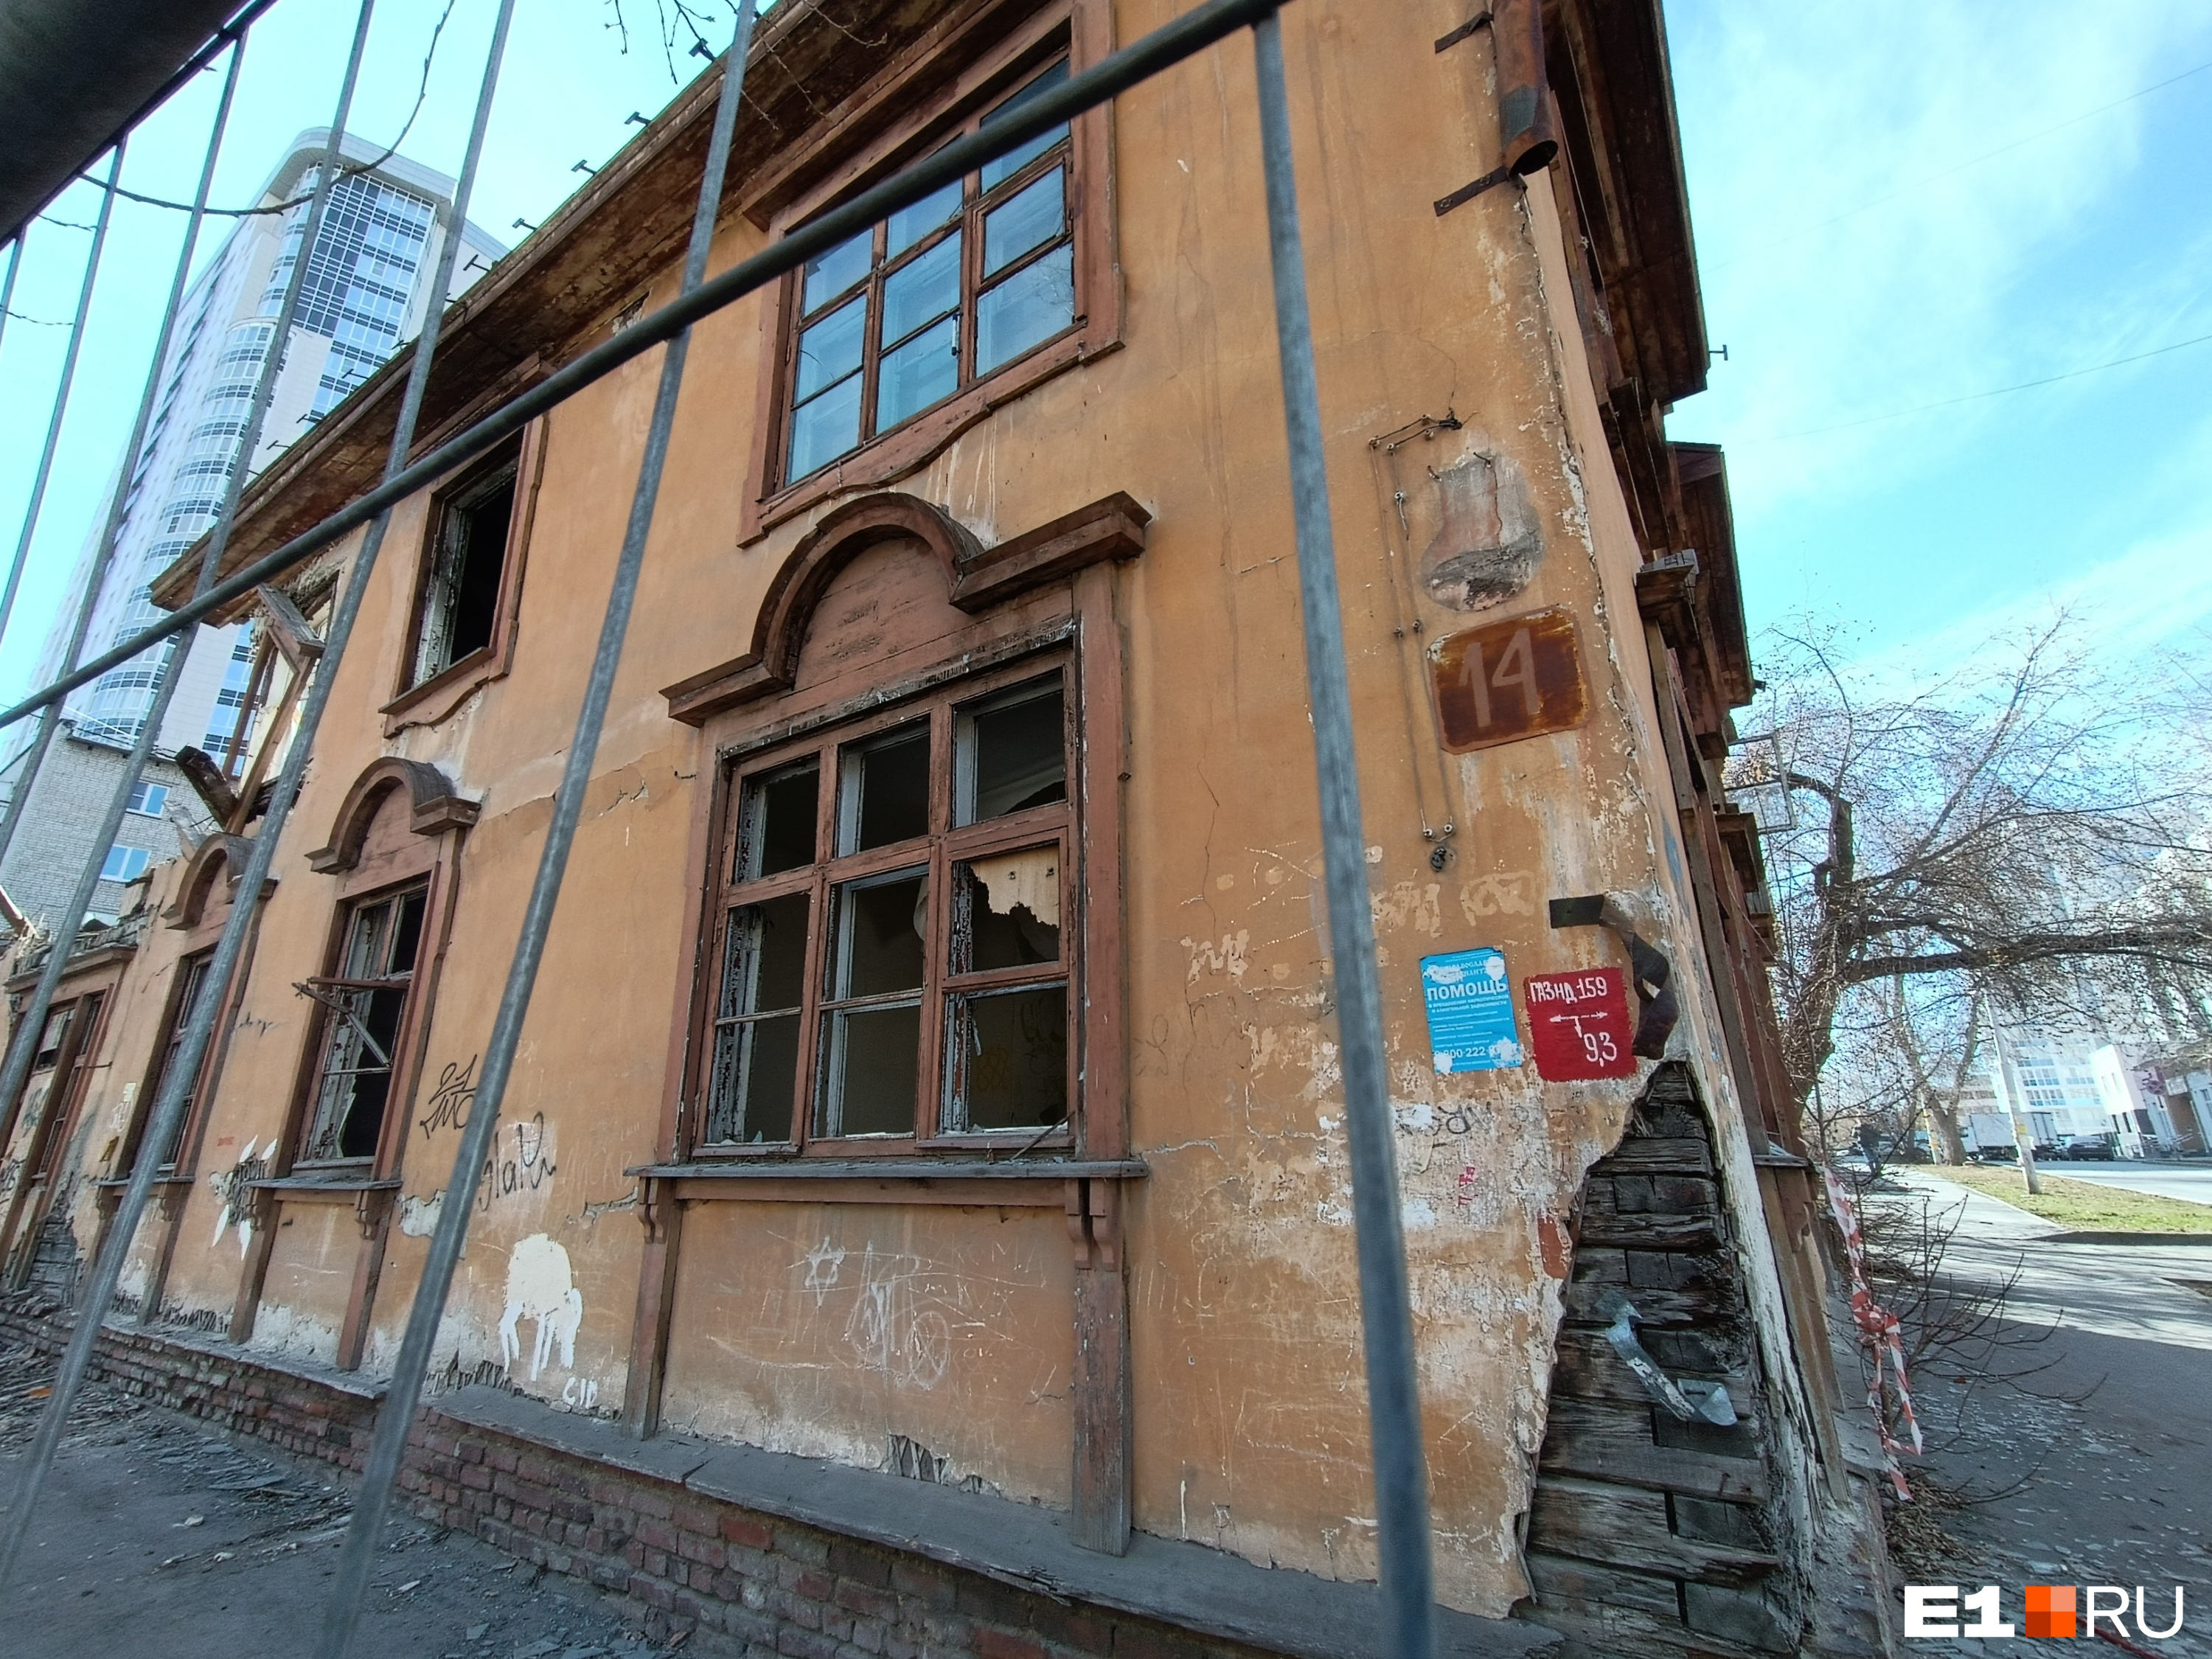 Недалеко от будущего второго «Екатеринбург-Сити» снесли дом. Видео